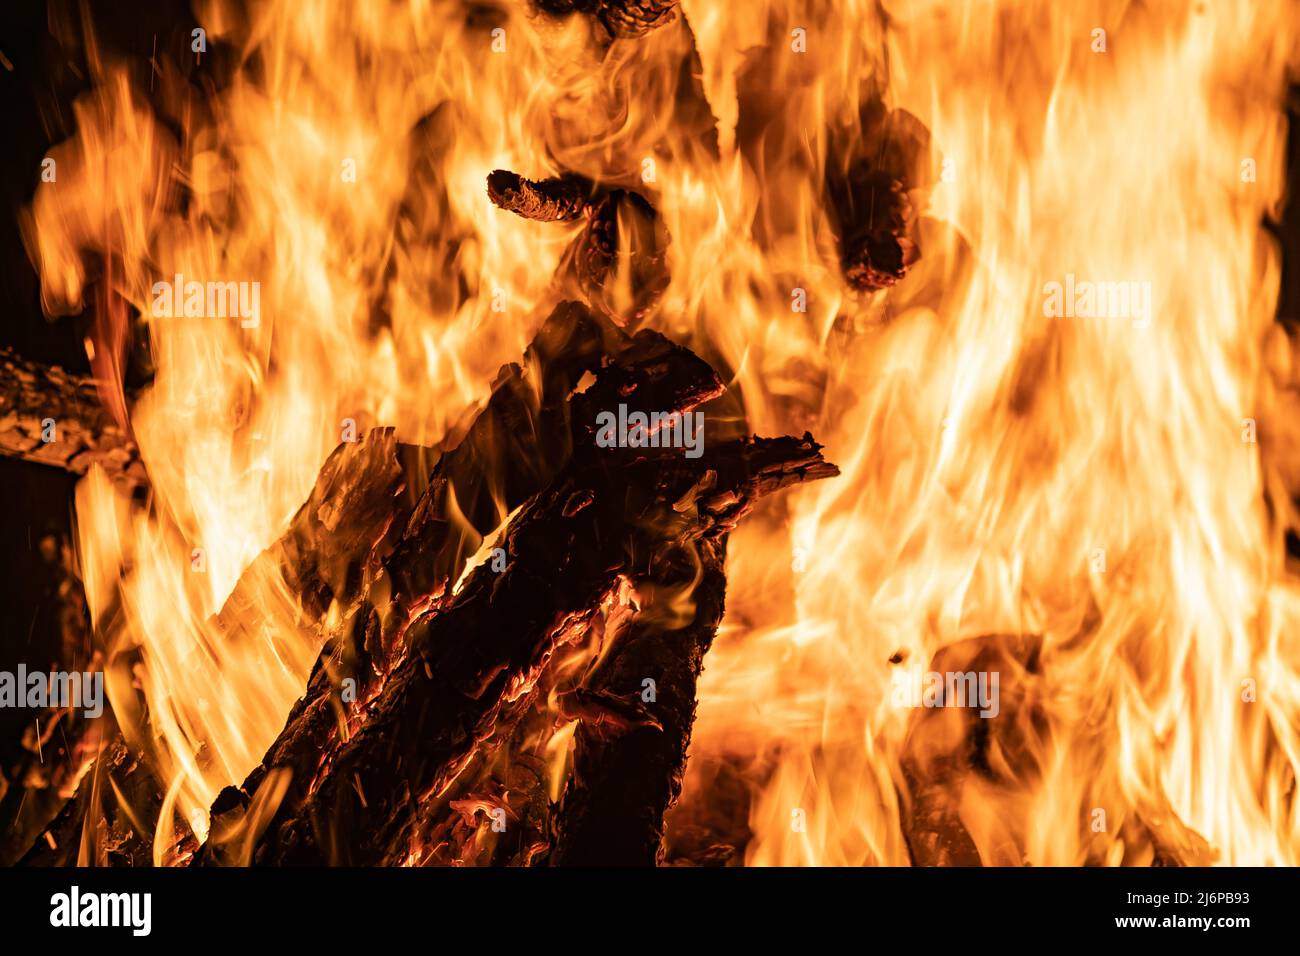 Lagerfeuer mit Betonung der Form des Feuers in seiner orangen Farbe, wobei die Holzstämme (Holz) verbrannt werden. Stockfoto